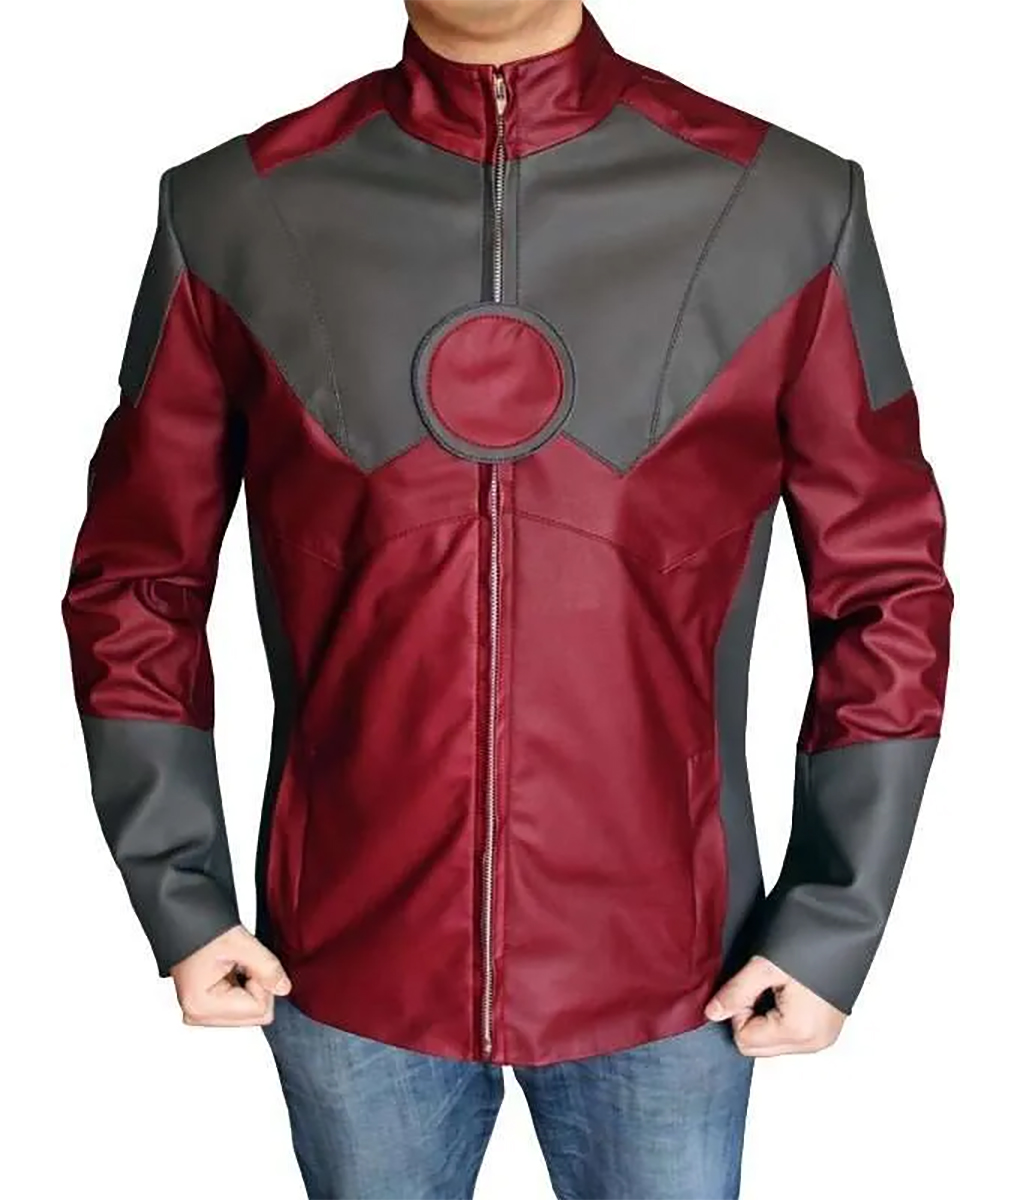 Iron Man Leather Jacket1